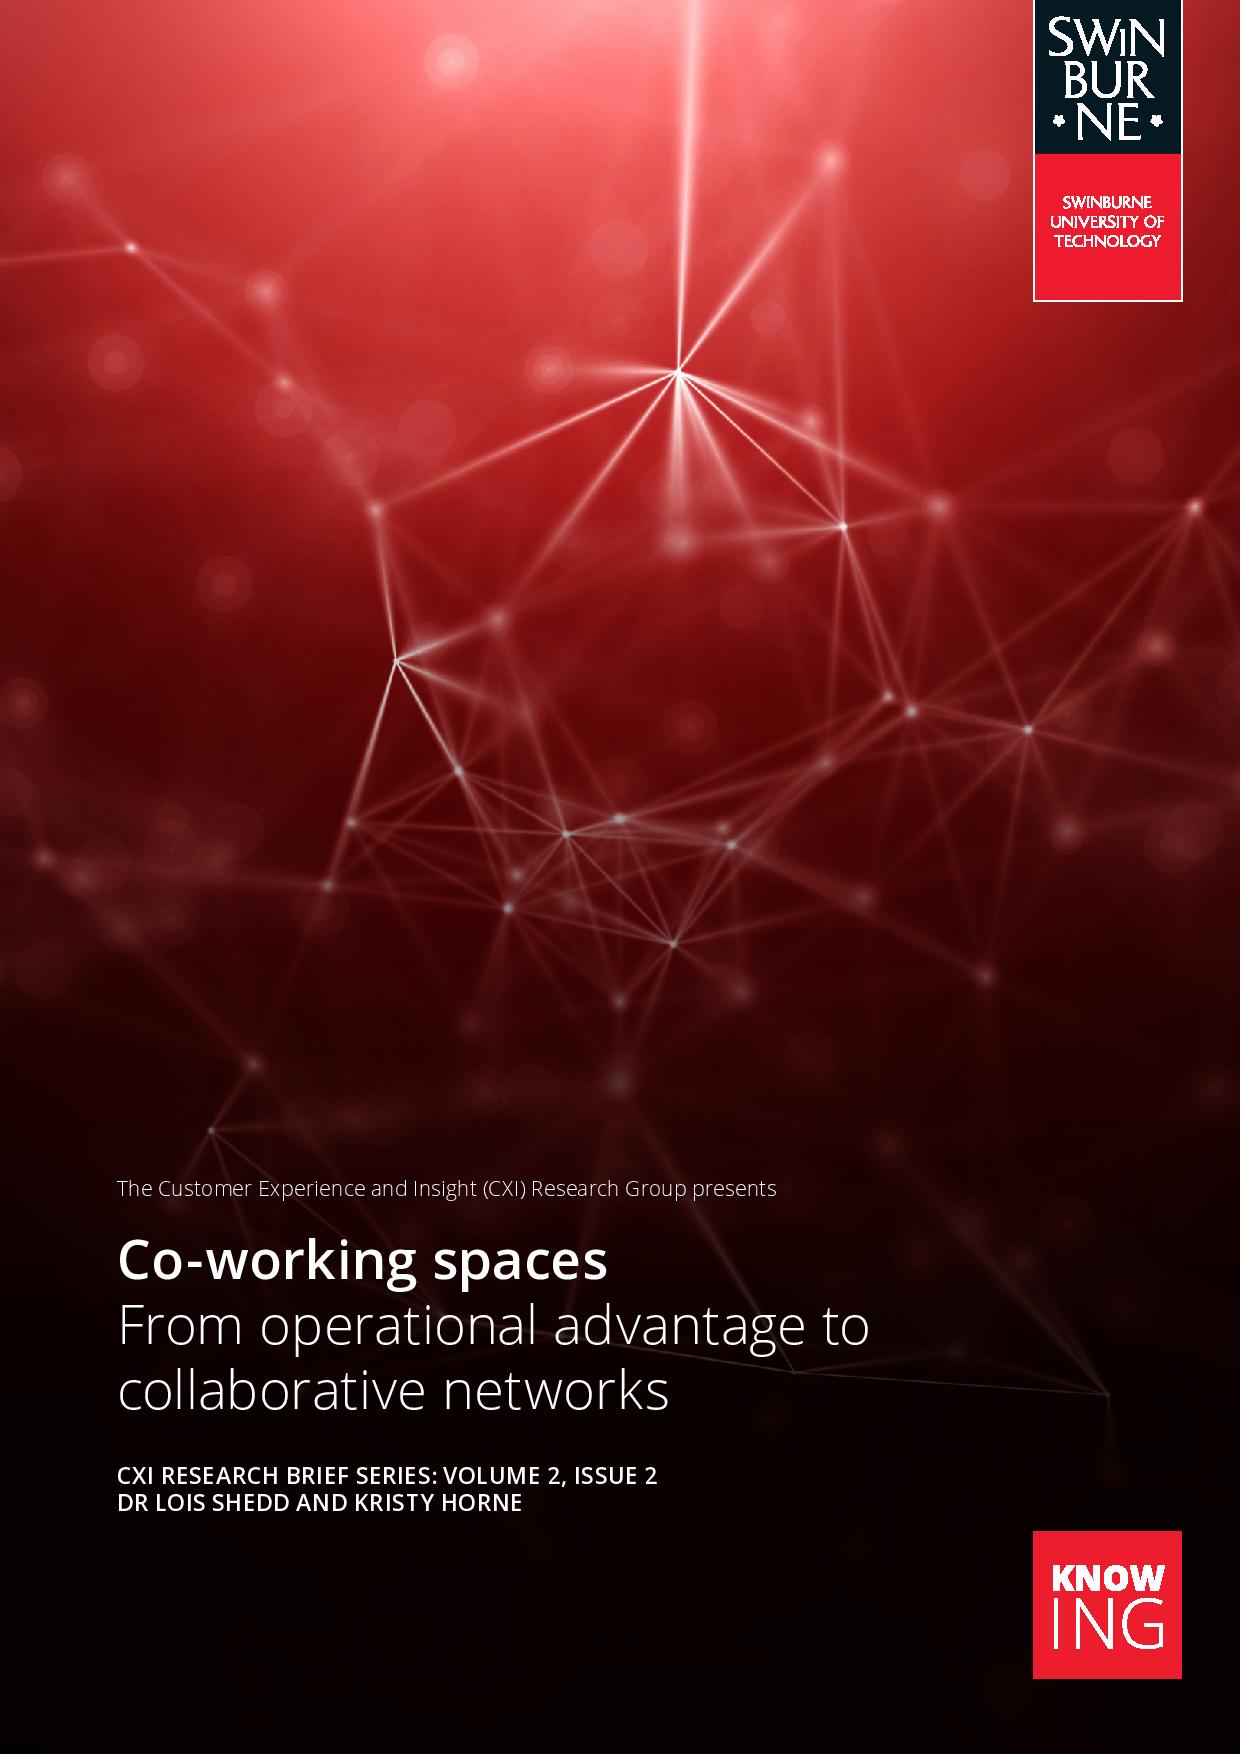 联合办公区:从合作网络的操作优势